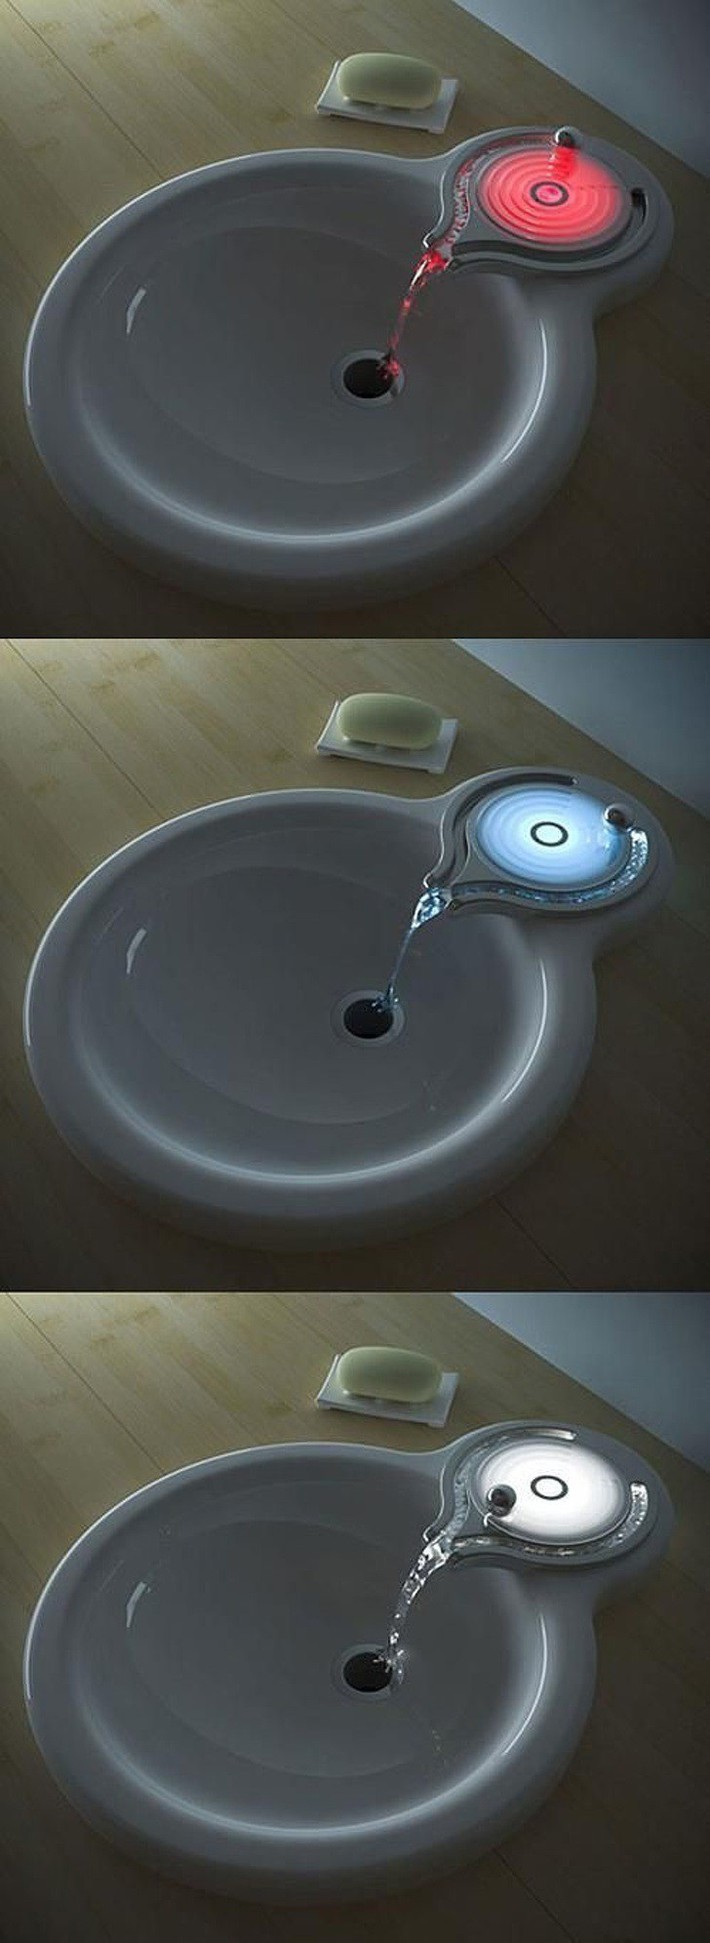 20 phát minh tuyệt vời có thể giúp giải quyết toàn bộ các vấn đề trong phòng tắm của bạn - Ảnh 12.